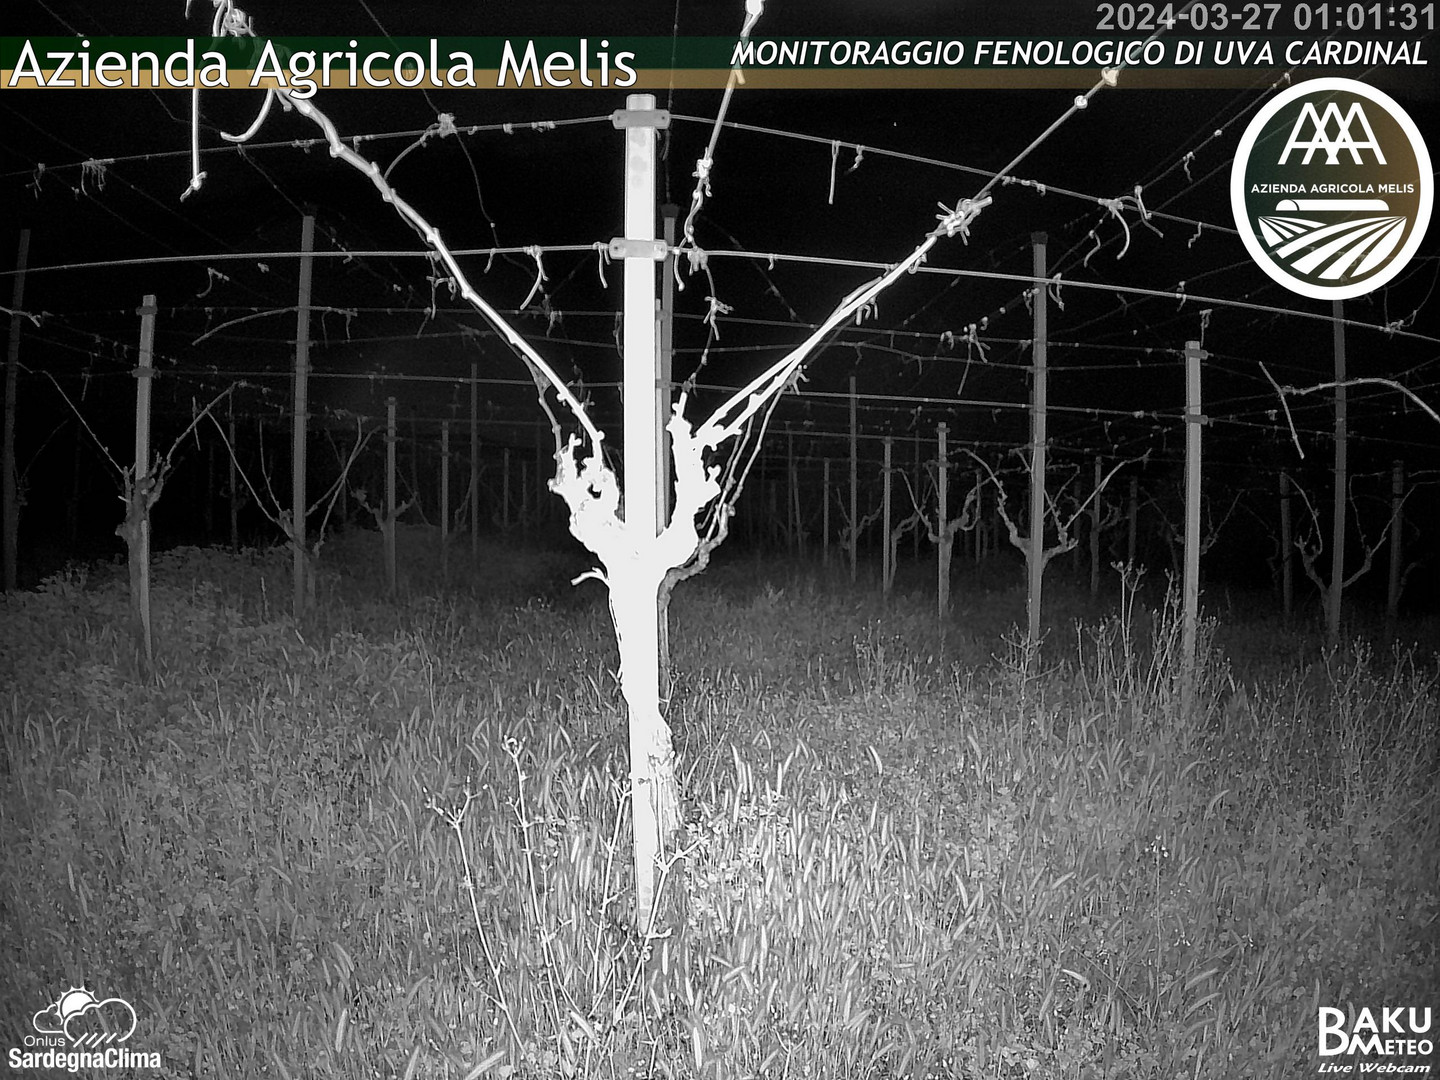 time-lapse frame, Bari Sardo - Fenologica webcam